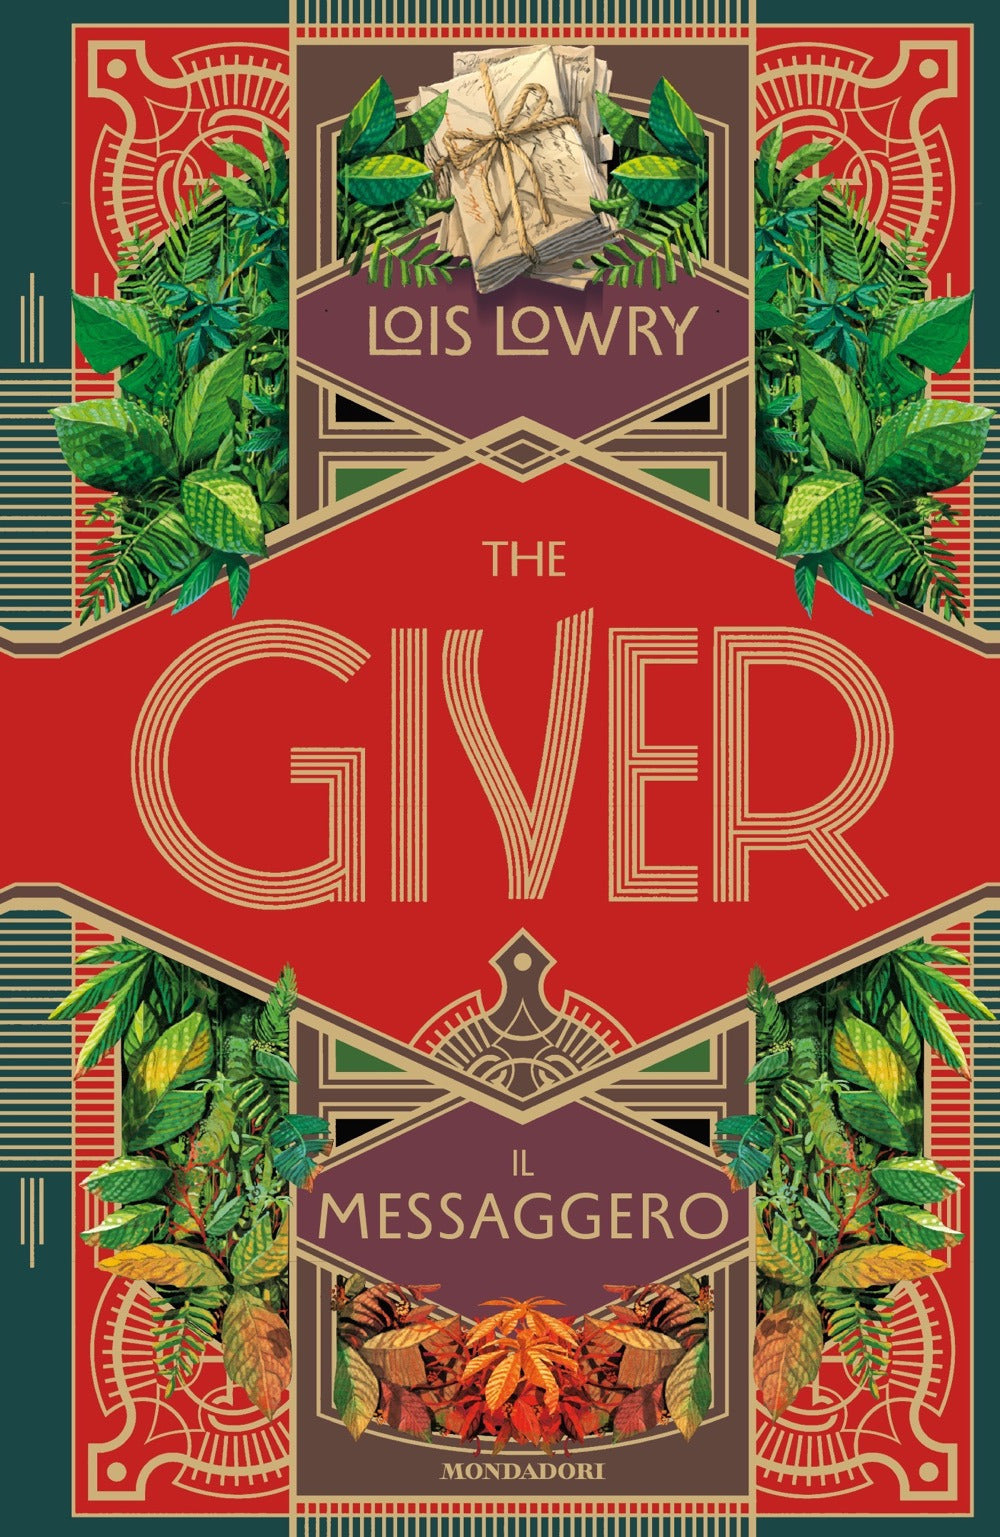 The giver. Il messaggero.